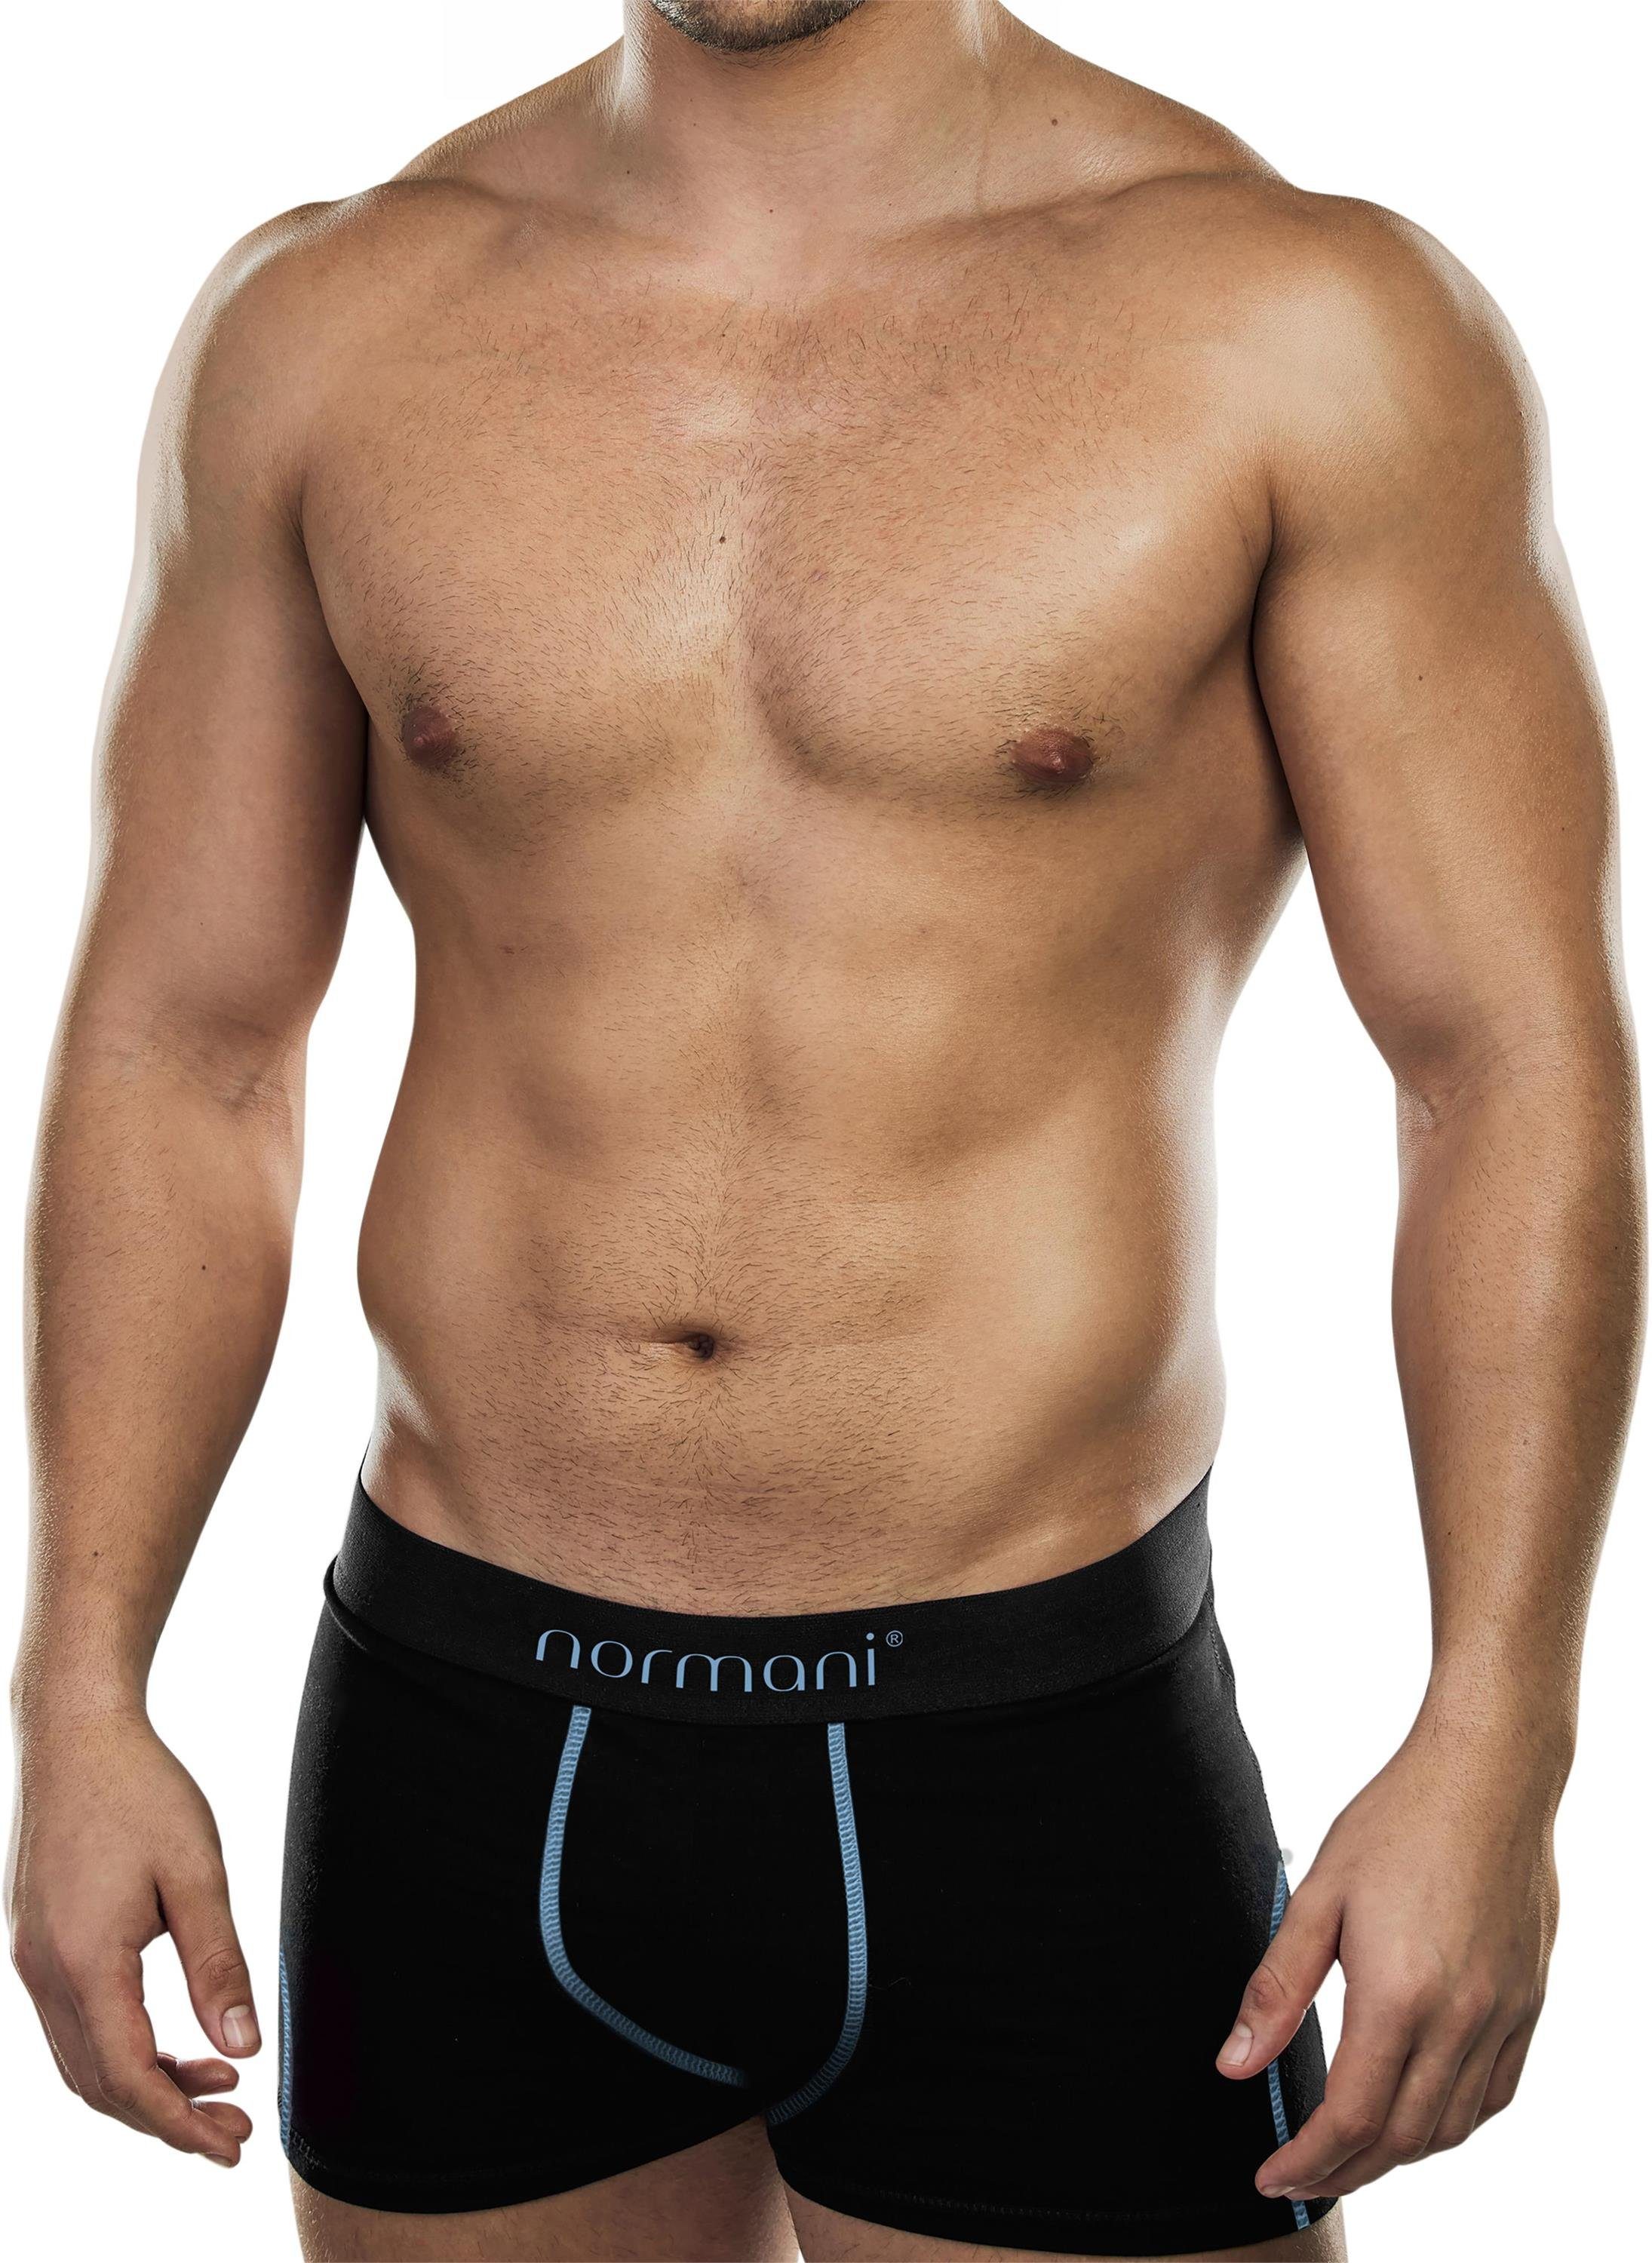 normani Boxershorts 6 weiche Boxershorts aus Baumwolle Unterhose aus atmungsaktiver Baumwolle für Männer Hellblau